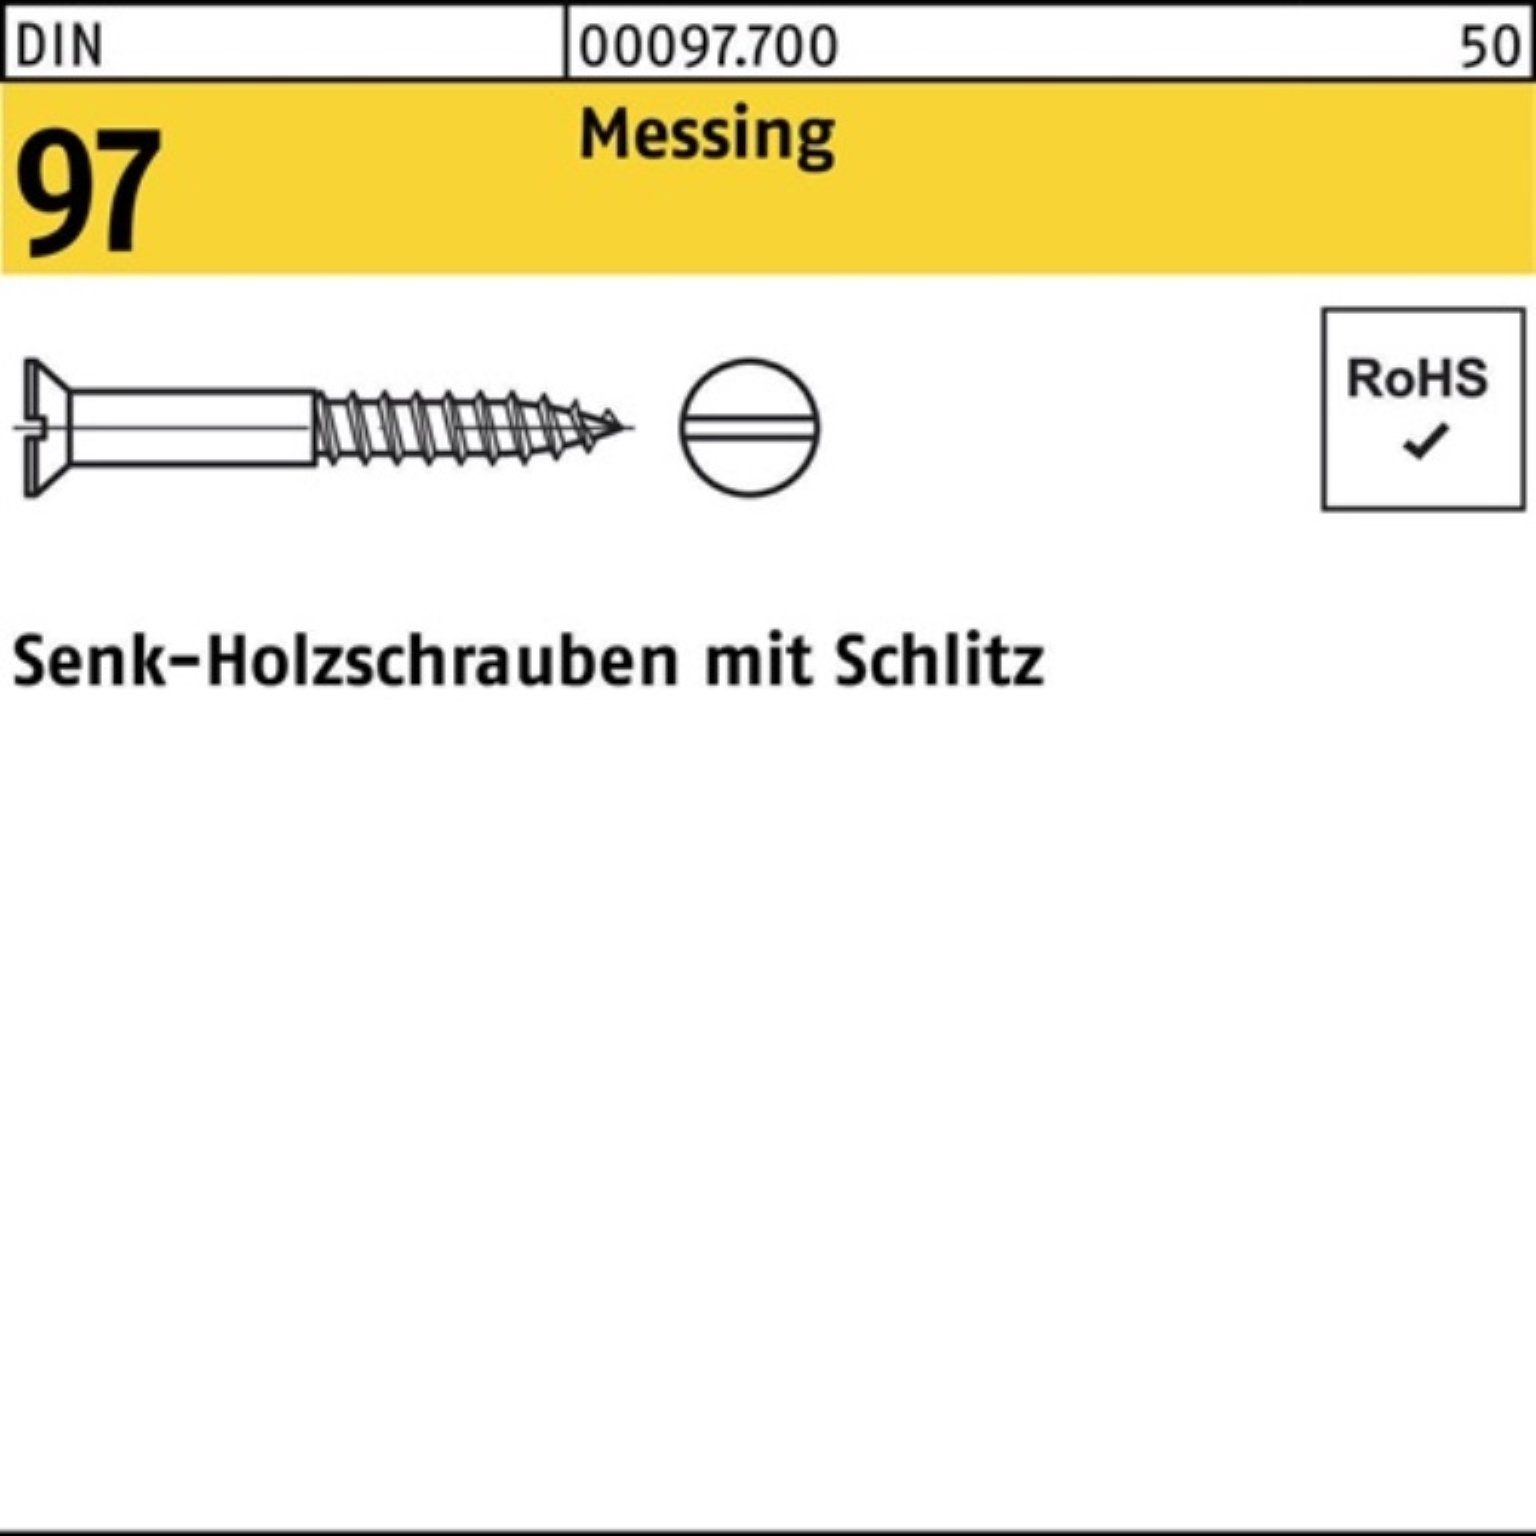 Reyher Schraube 200er Pack Holzschraube 4x 200 Messing 97 DIN Stück Schlitz SEKO D 16